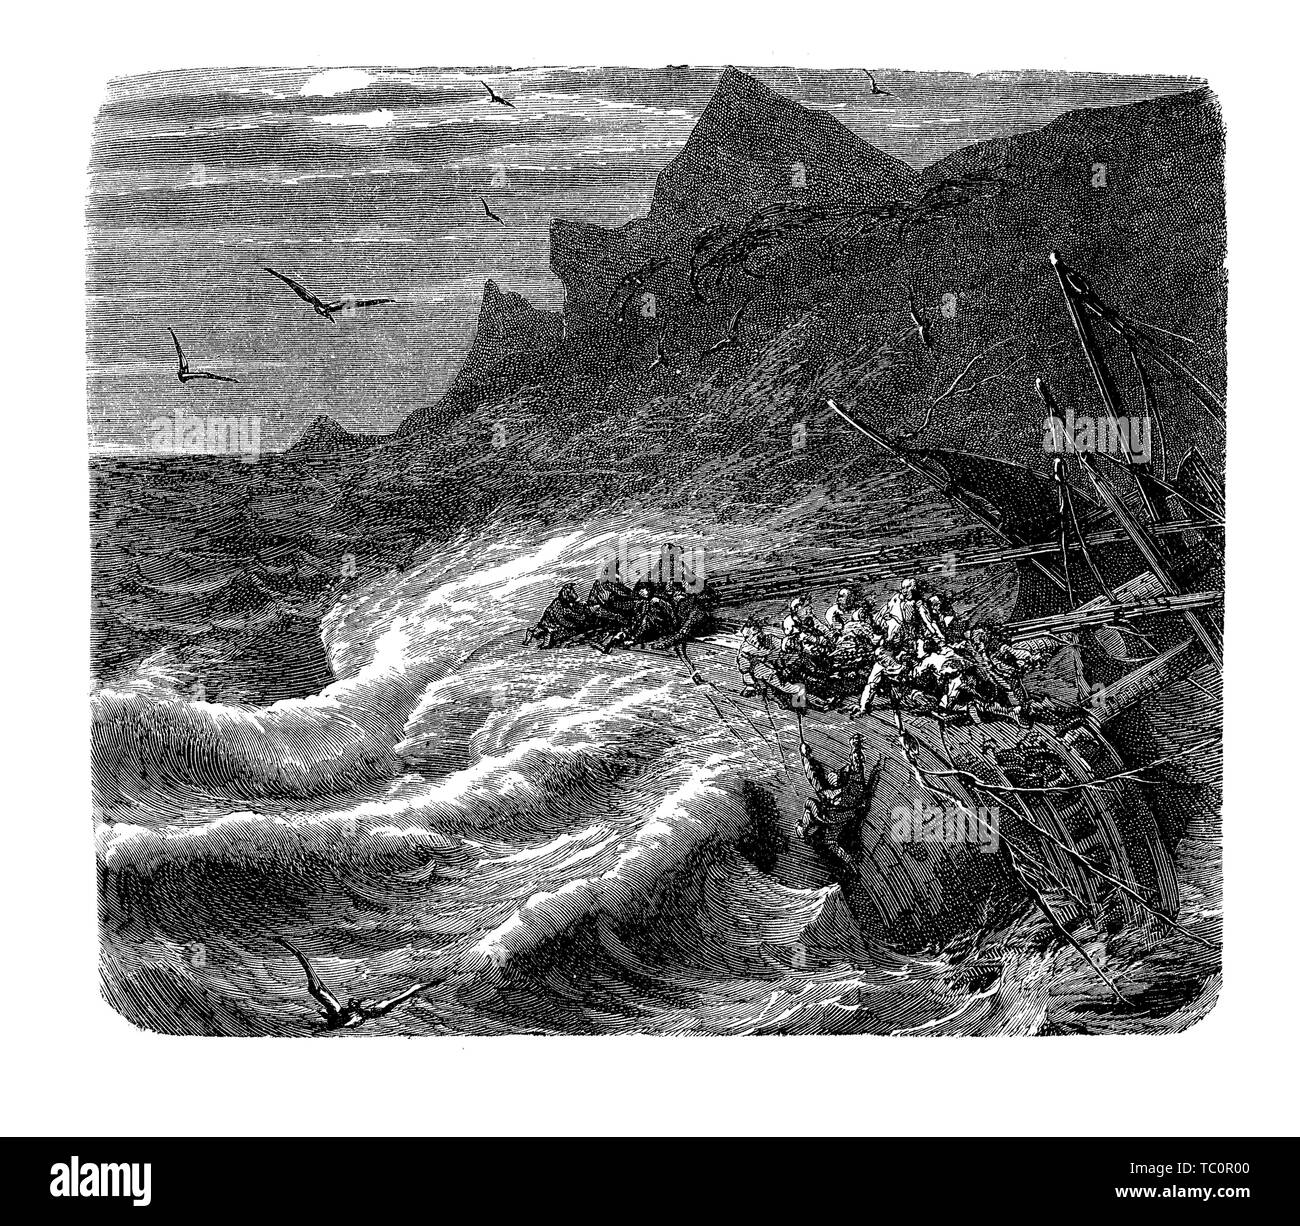 Nave arenata in balia di una brutta tempesta, con onde percosse il relitto e persone in pericolo di vita Foto Stock